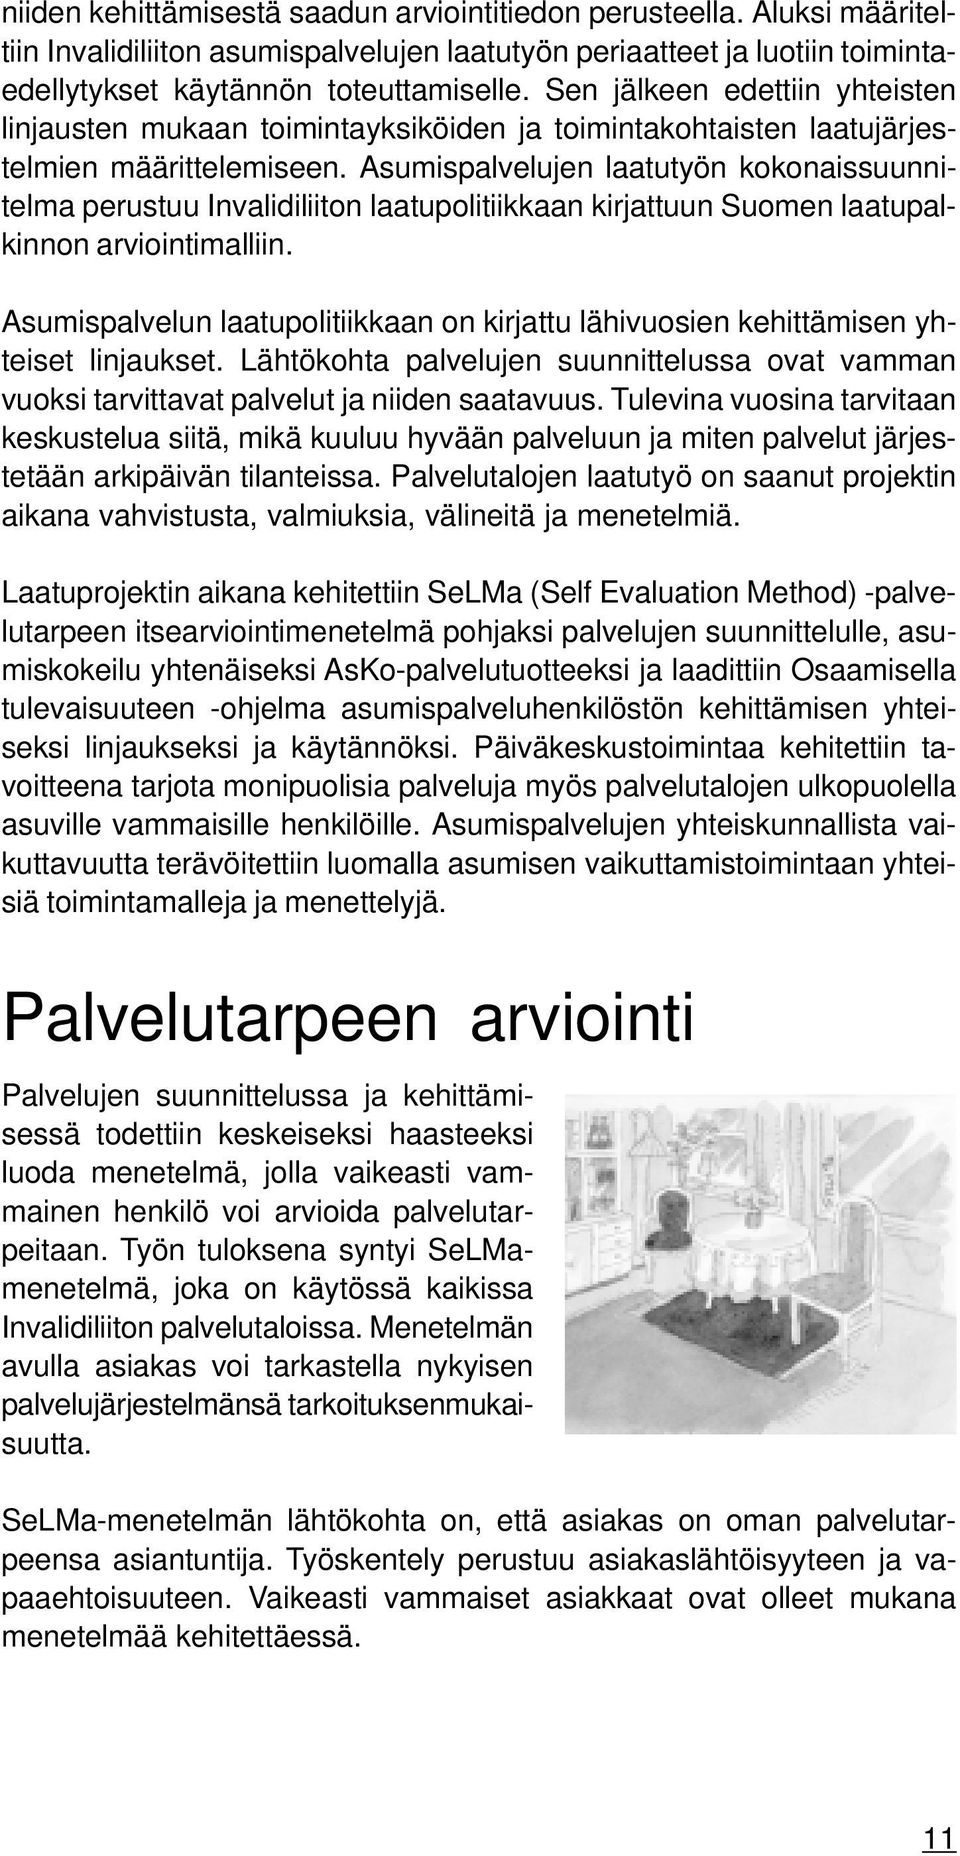 Asumispalvelujen laatutyön kokonaissuunnitelma perustuu Invalidiliiton laatupolitiikkaan kirjattuun Suomen laatupalkinnon arviointimalliin.